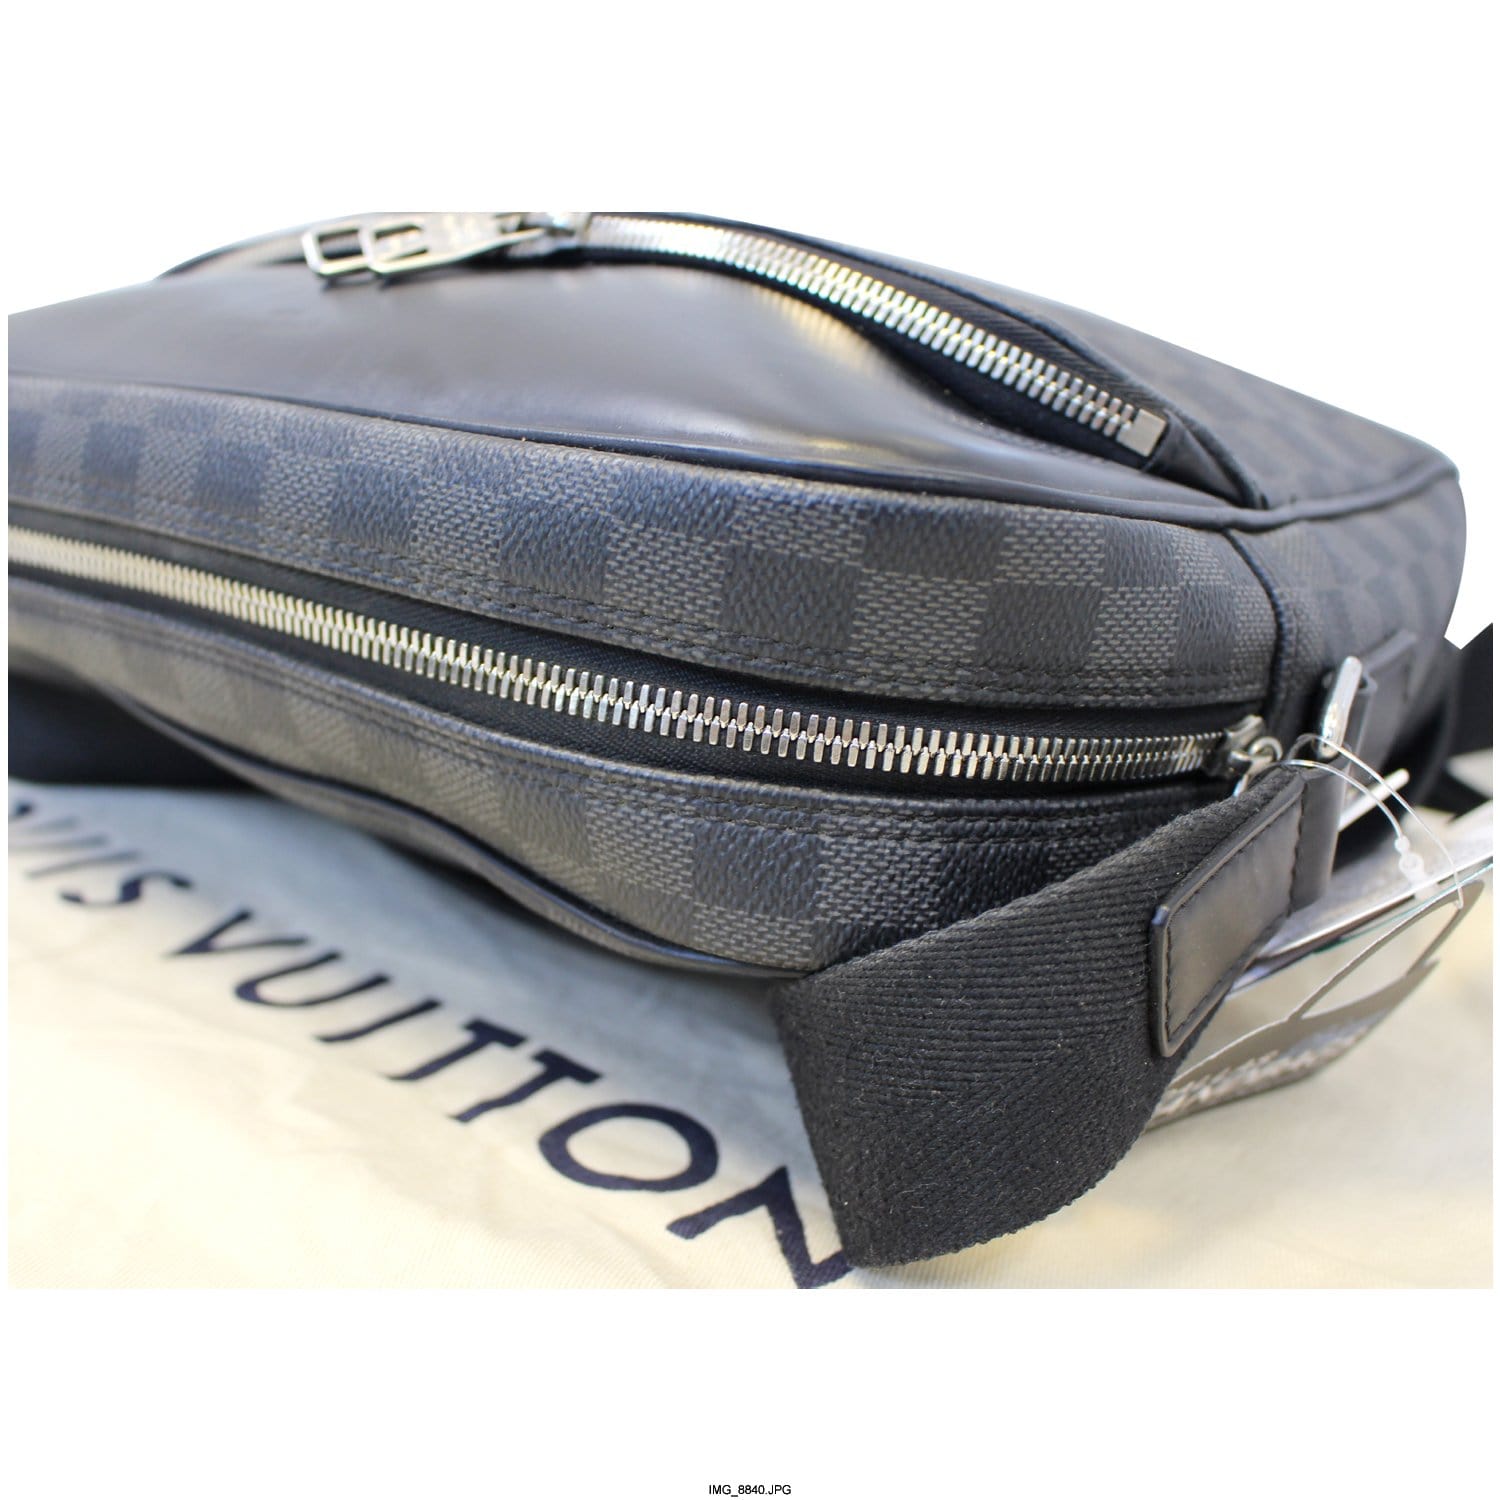 Louis Vuitton 2017 Dayton PM Messenger Bag - Farfetch